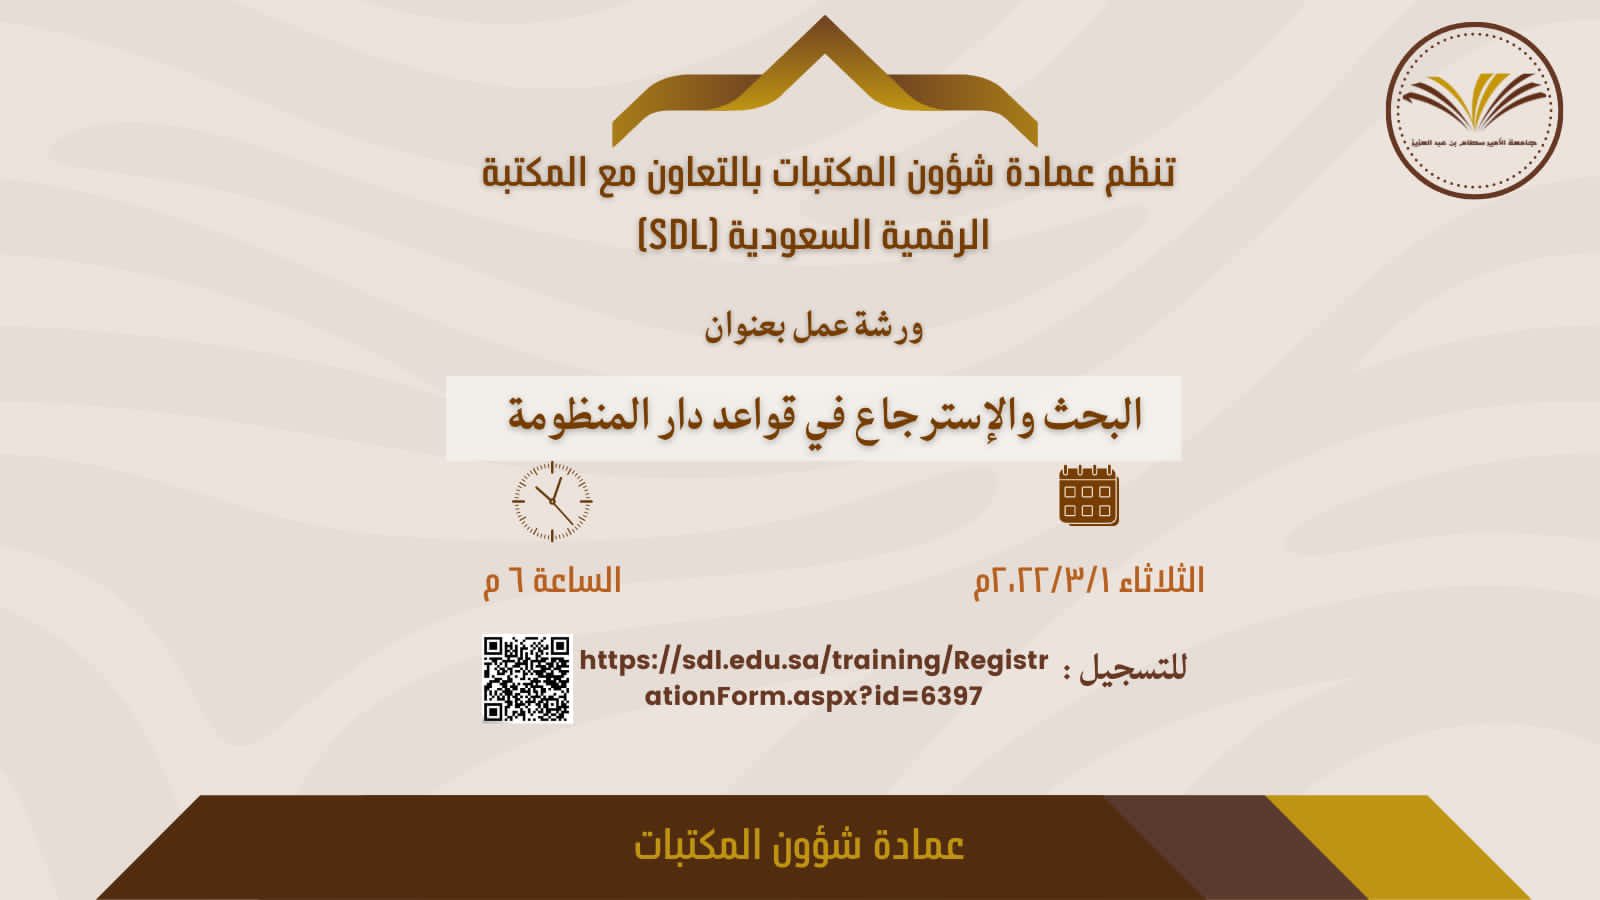 تنظم عمادة شؤون المكتبات بالتعاون مع المكتبة الرقمية السعودية (SDL) دورة تدريبية  عن بُعد بعنوان " البحث والاسترجاع في قواعد دار المنظومة " وذلك يوم الثلاثاء ٢٠٢٢/٣/١م.